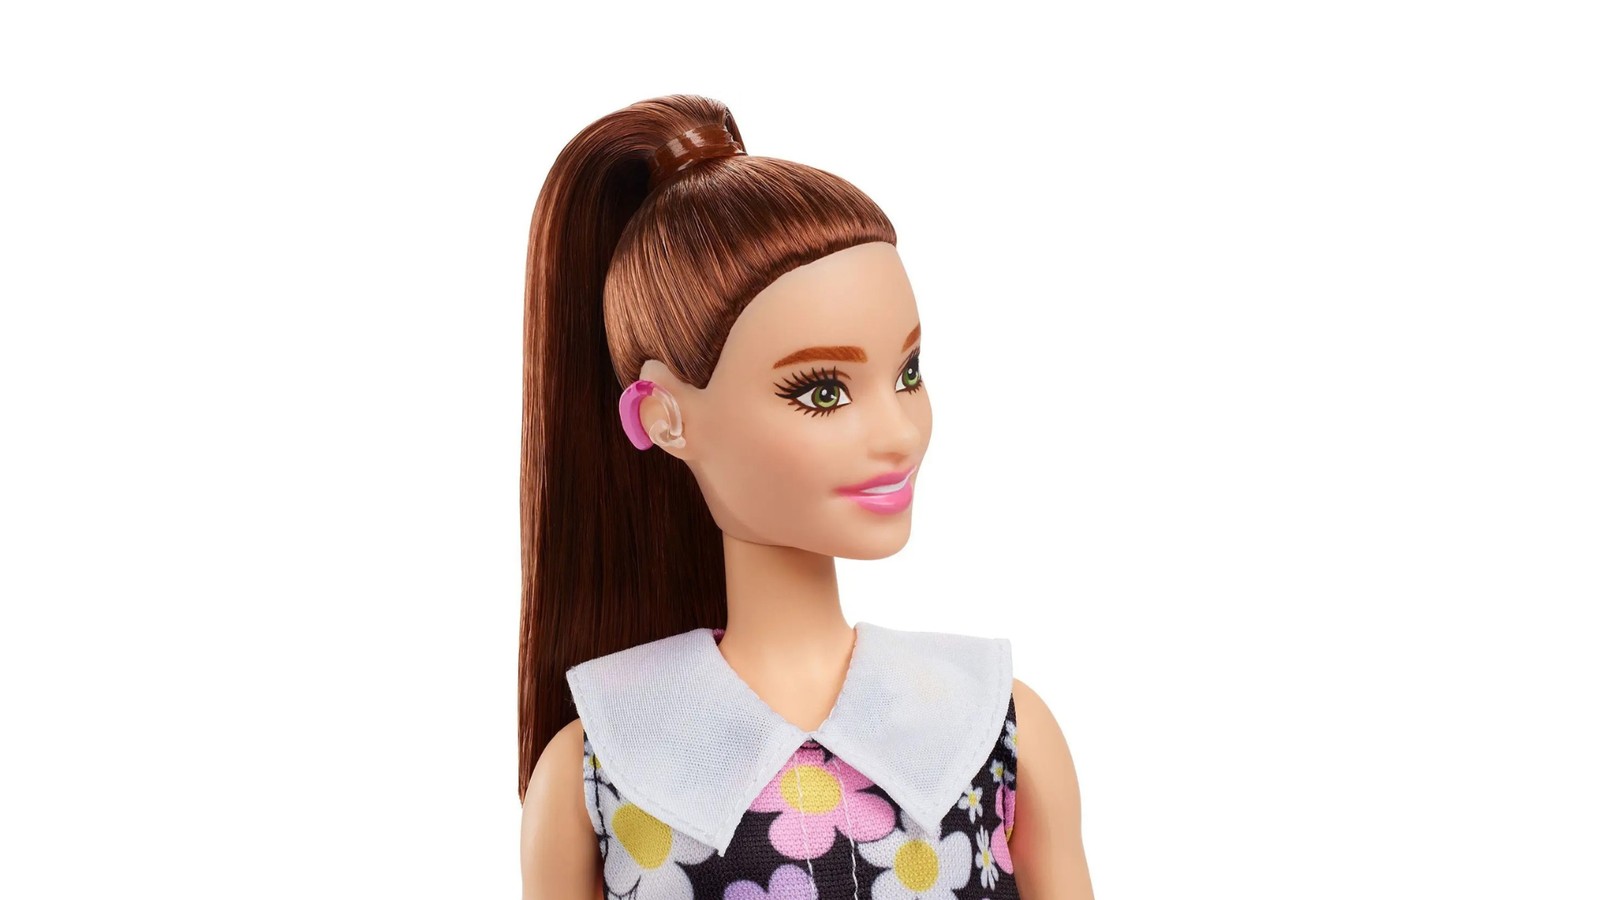 Barbie com aparelho auditivo. — Foto: Divulgação / Mattel